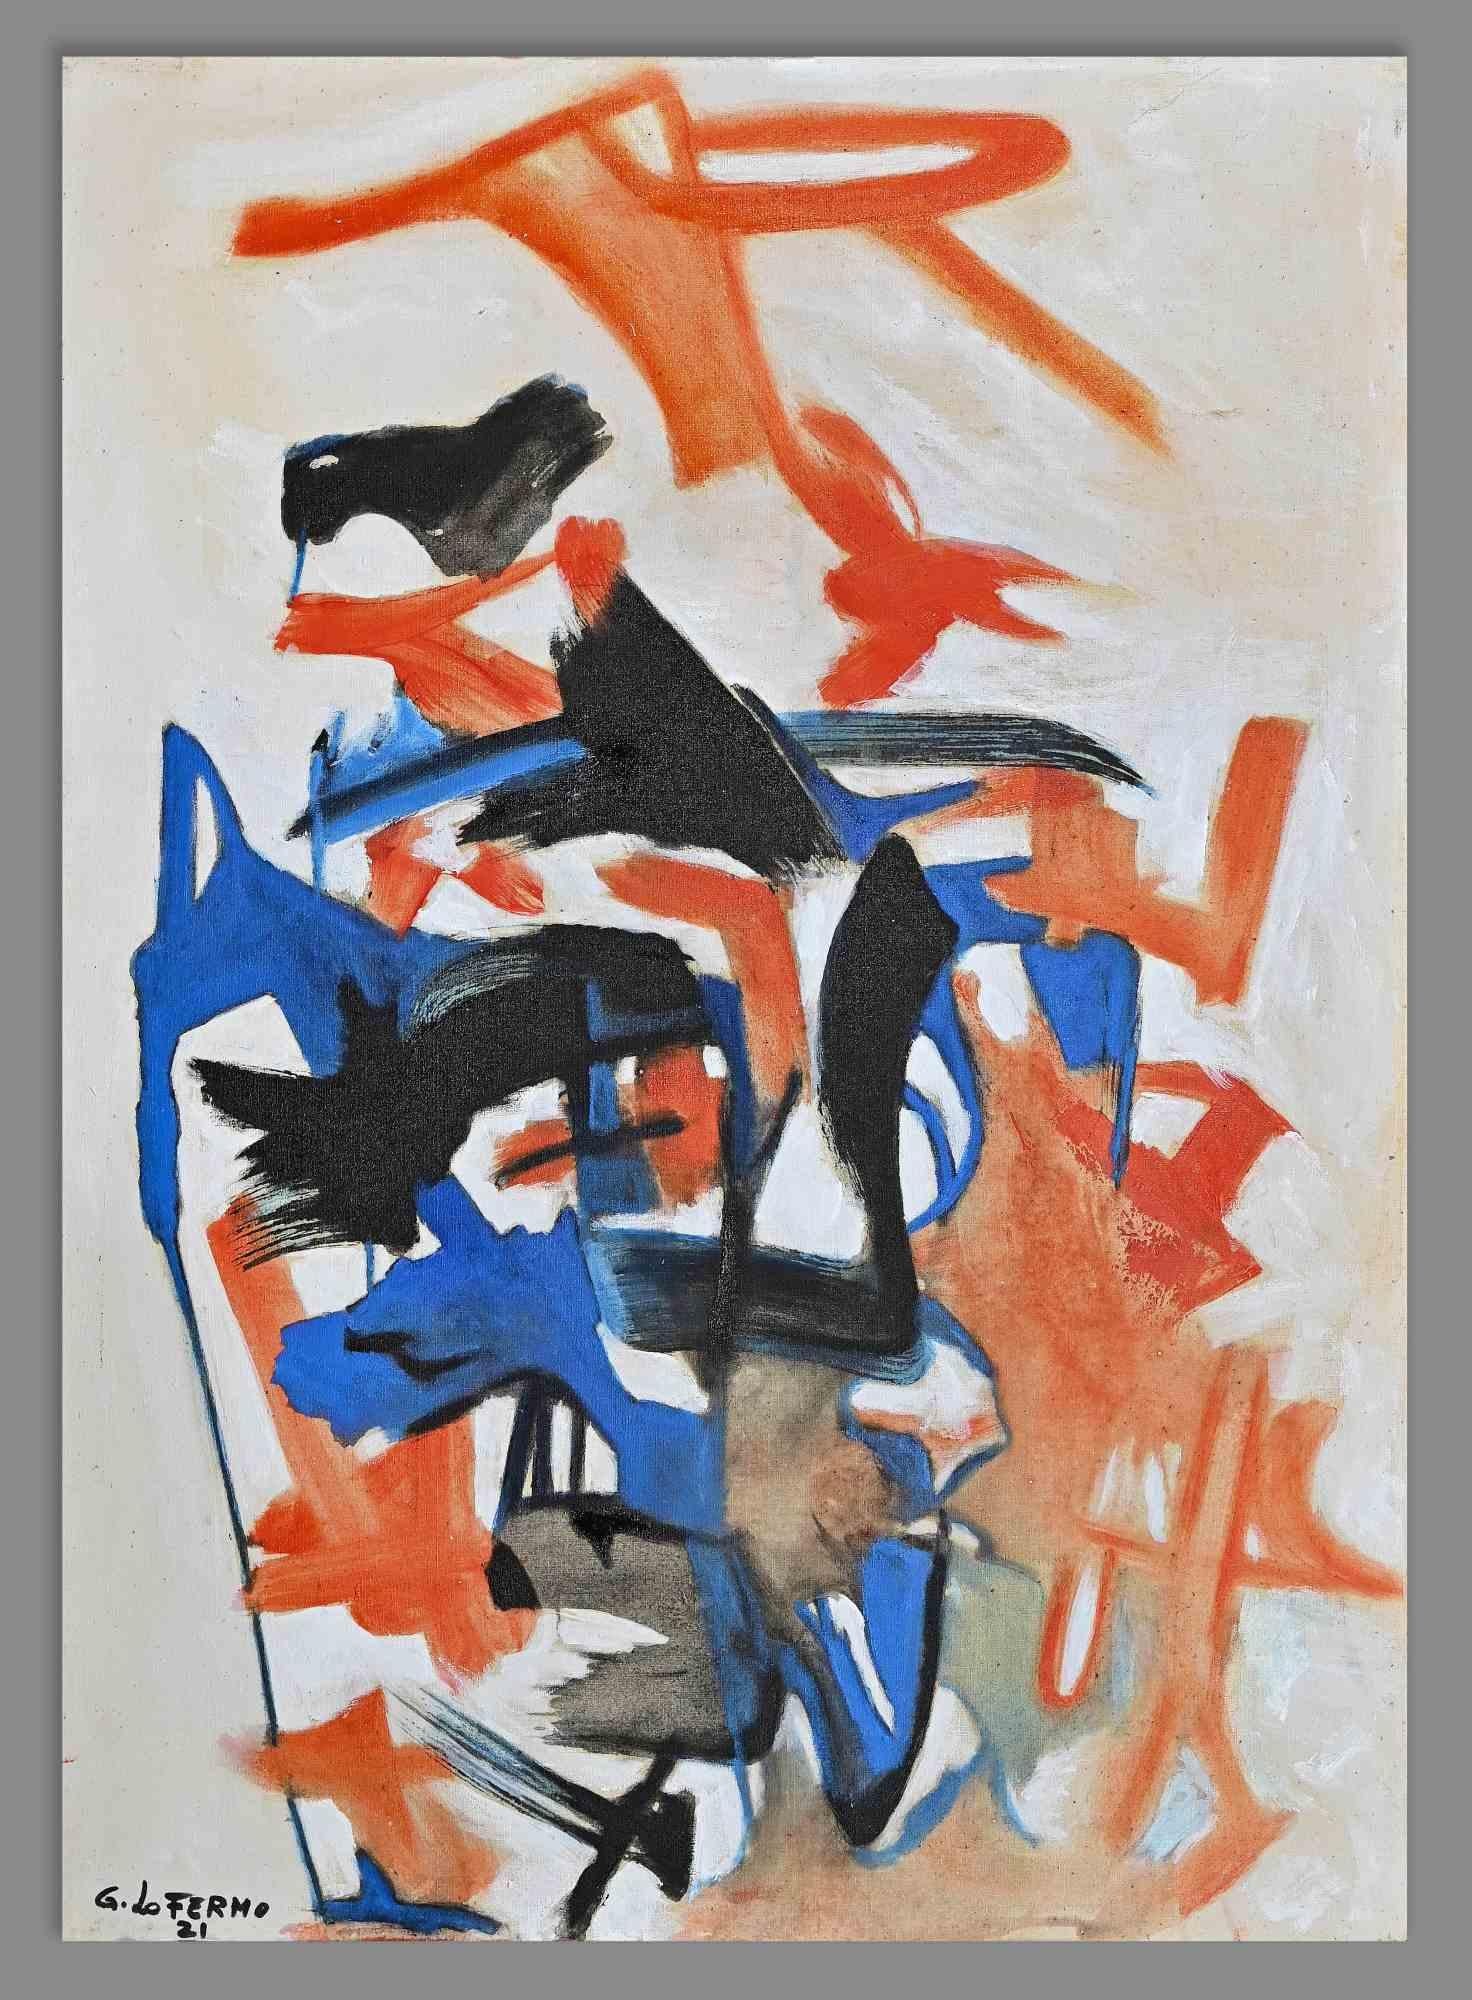 Abstract Expression ist ein Original-Kunstwerk von Giorgio Lo Fermo (geb. 1947) aus dem Jahr 2021.

Original Ölgemälde auf Leinwand.

Handsigniert und datiert am linken unteren Rand.

Ursprünglicher Titel: Espressionismo astratto

Handsigniert,